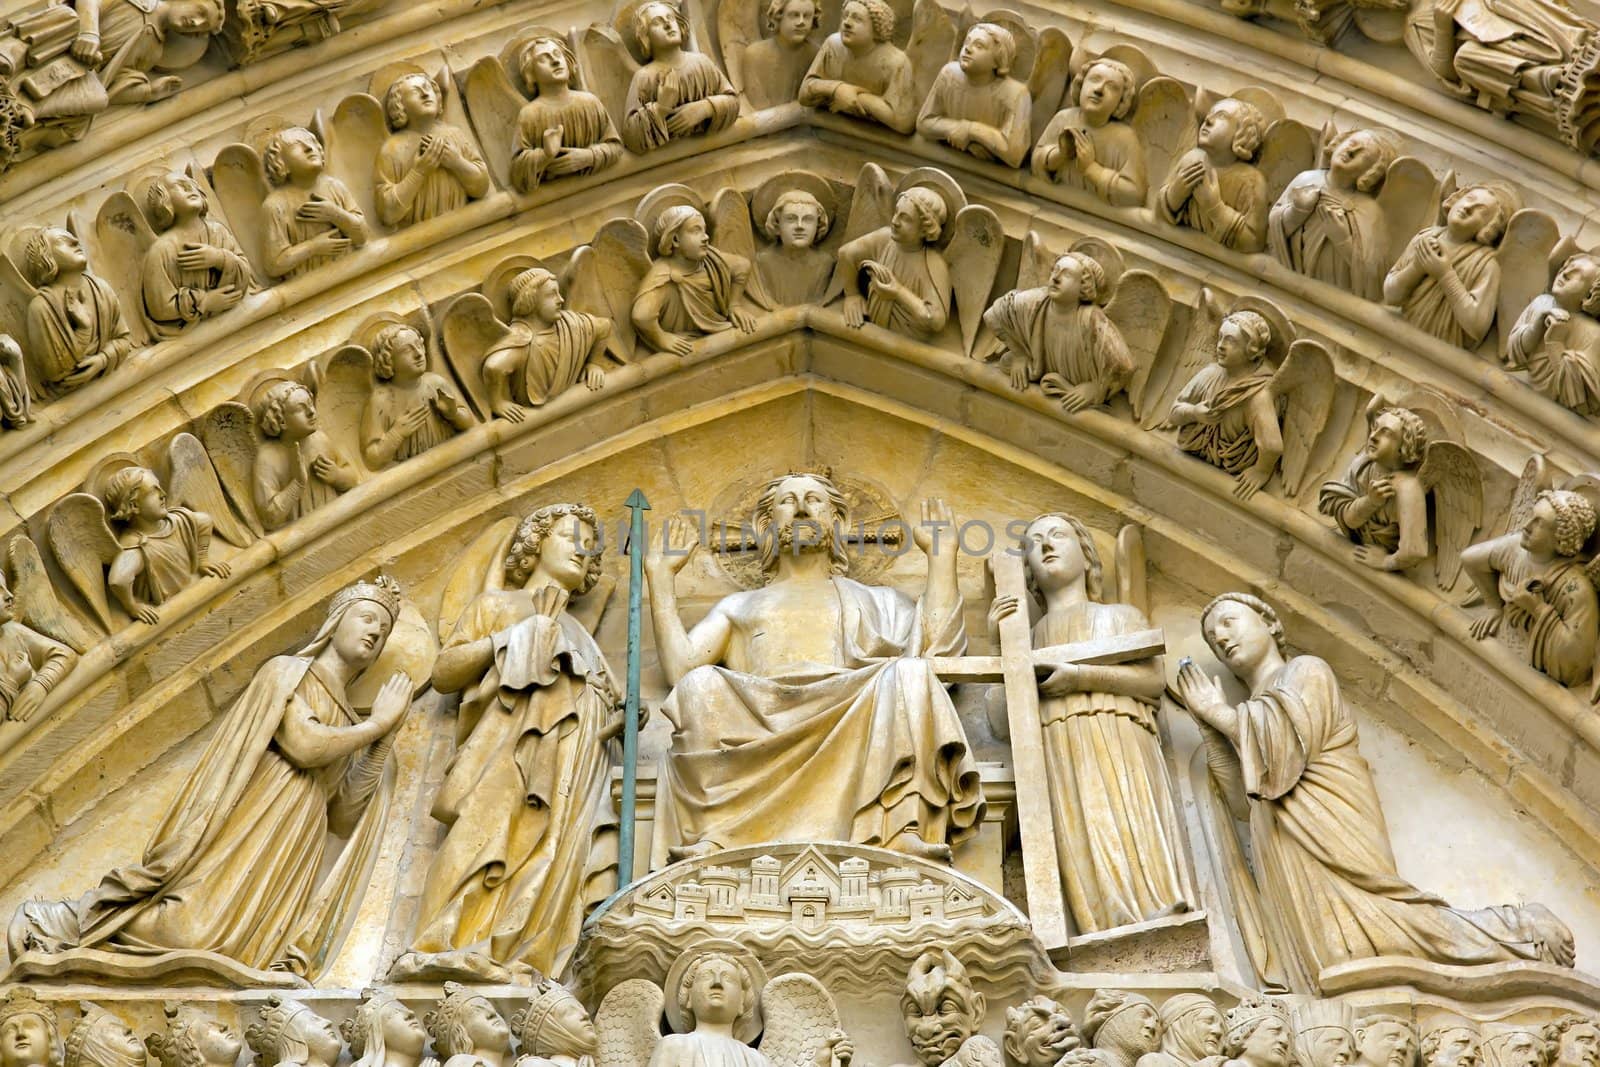 Judgment Day, Notre Dame de Paris by neko92vl